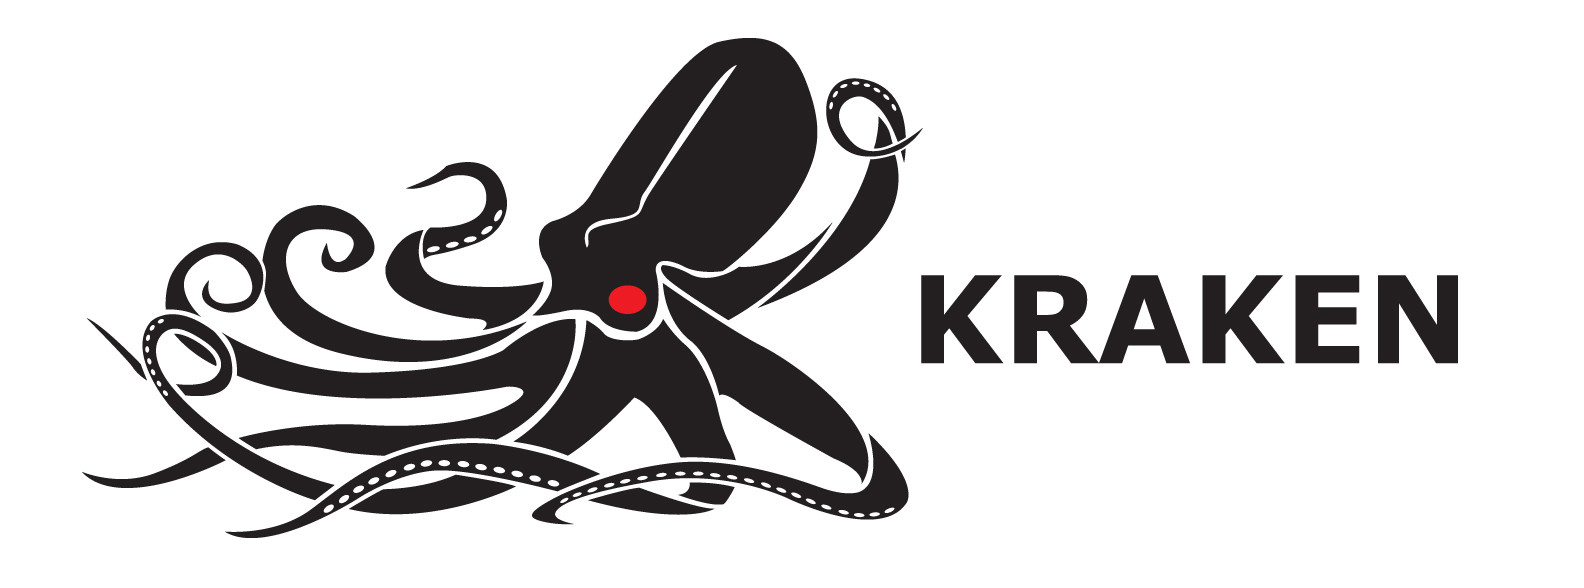 MEMBER NEWS: Kraken awarded $3 million seabed survey contract